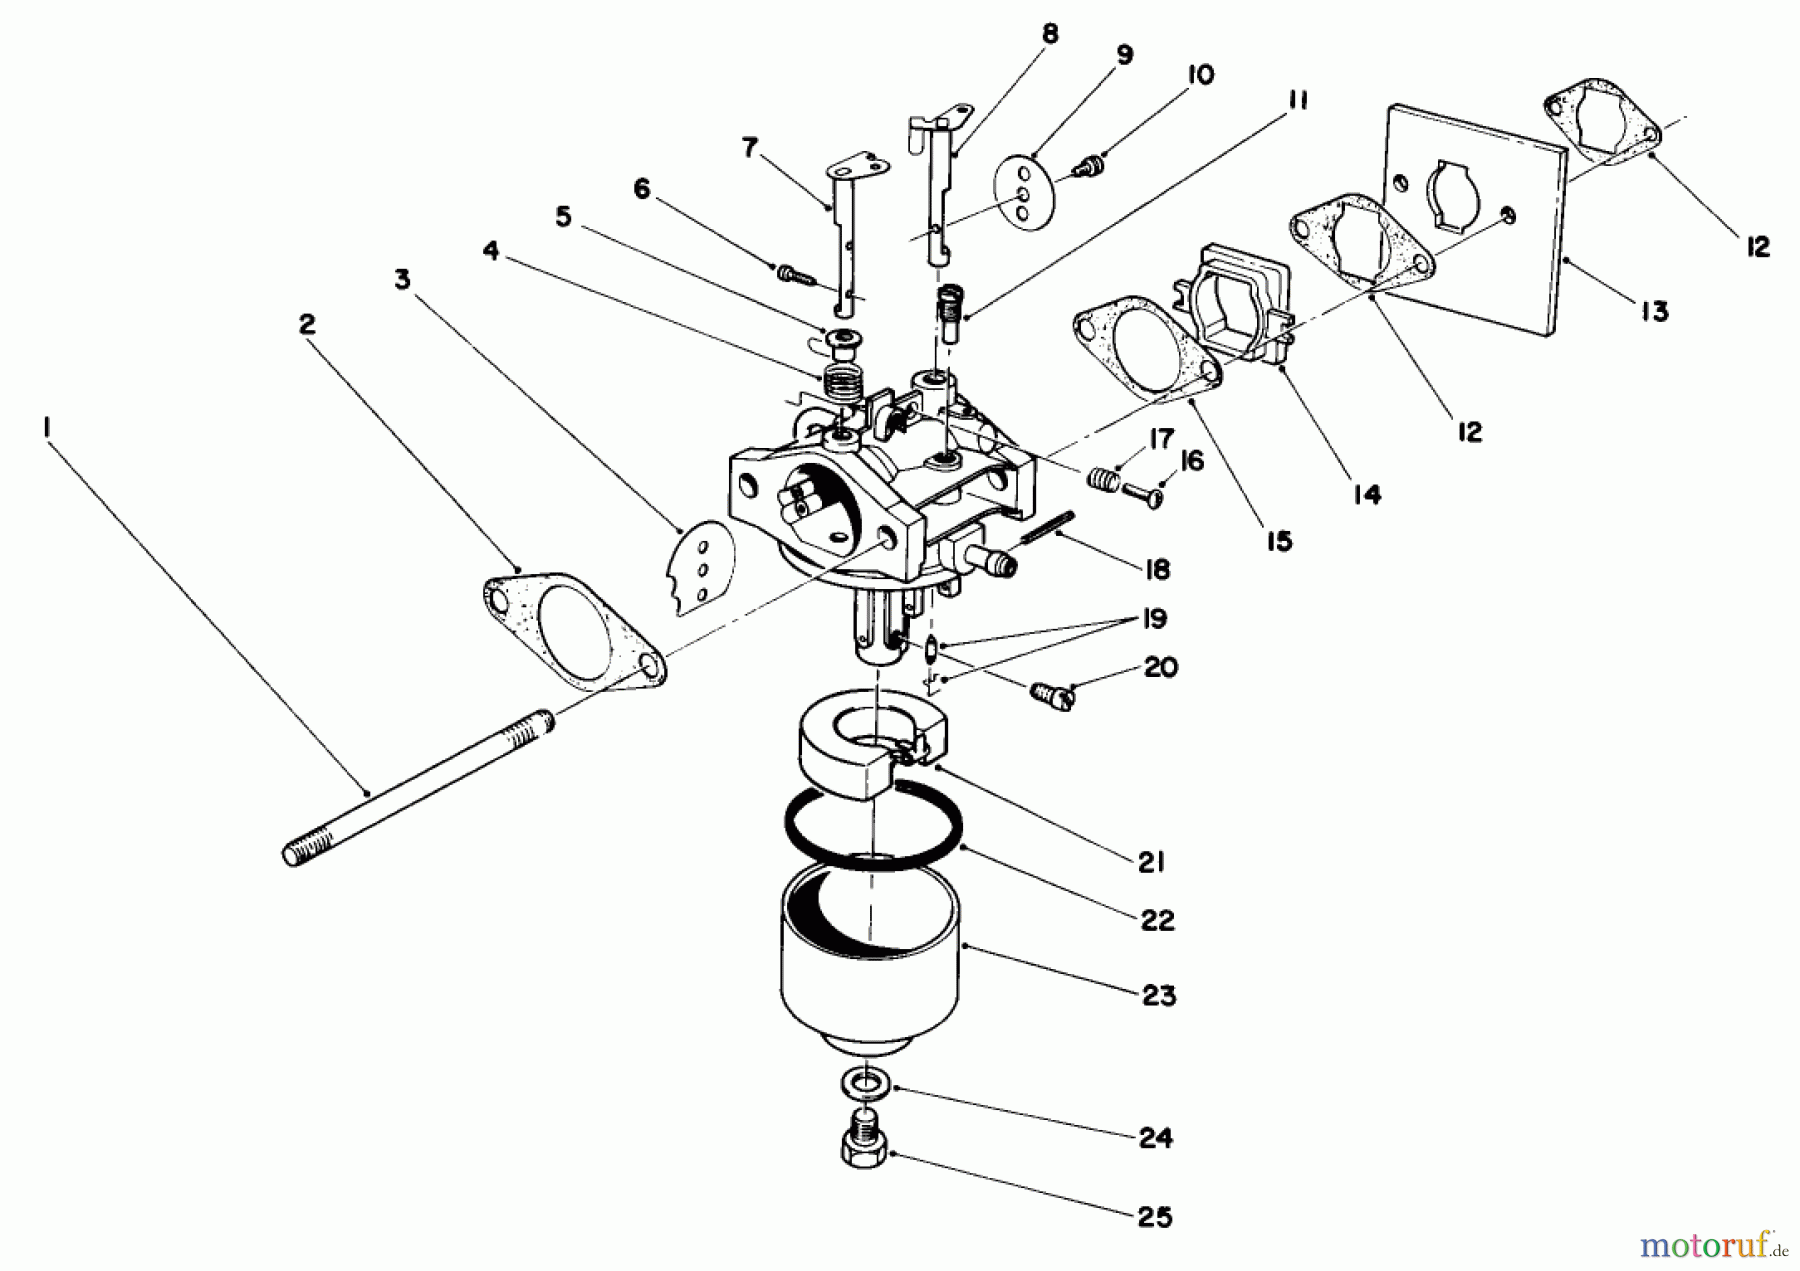  Toro Neu Mowers, Walk-Behind Seite 2 22030 - Toro Lawnmower, 1987 (7000001-7999999) ENGINE ASSEMBLY MODEL NO. 47PG6 #3